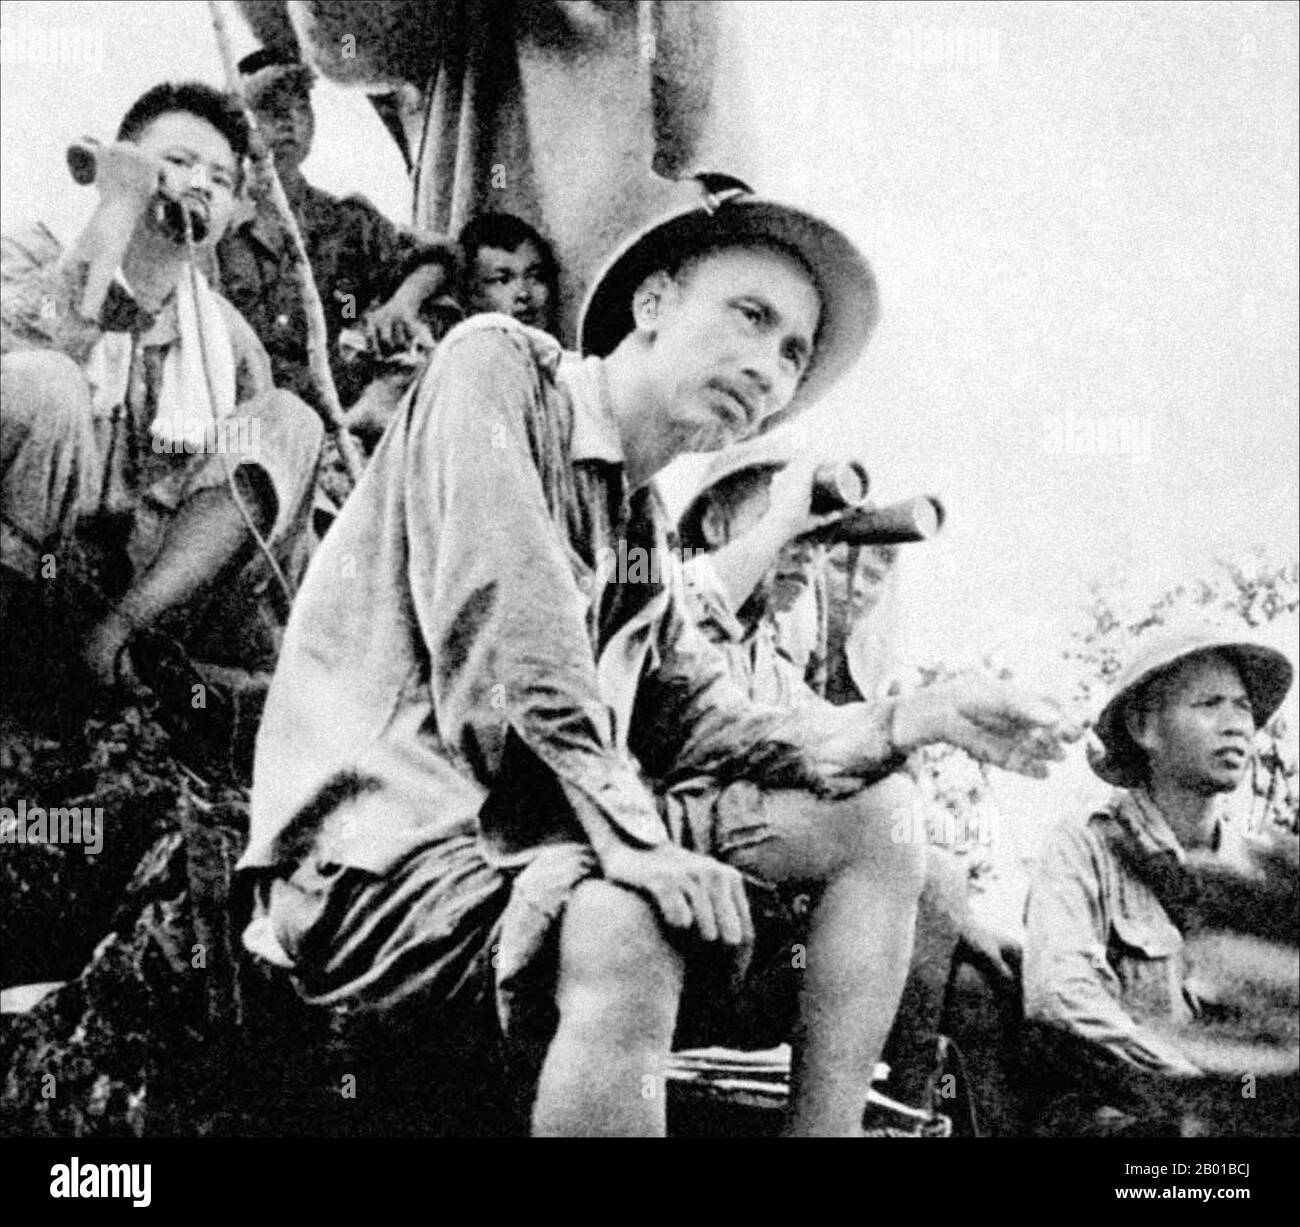 Vietnam: Ho Chi Minh auf einem Militärkommandposten im Norden Tonkins während des ersten Indochinakrieges (1946-1954). Foto von Vu Nang an (15. Mai 1916 - 7. Juli 2004, nicht urheberrechtlich geschützt), 16. September 1950. Der erste Indochinakrieg (auch bekannt als französischer Indochinakrieg, antifranzösischer Krieg, französisch-vietnamesischer Krieg, französisch-vietnamesischer Krieg, Indochinakrieg, Schmutziger Krieg in Frankreich und antifranzösischer Widerstandskrieg im heutigen Vietnam) wurde in Französisch-Indochina vom 19. Dezember 1946 bis zum 1. August 1954 zwischen dem französischen Fernen Osten Expeditionskorps der Französischen Union gegen die Việt Minh, angeführt von Hồ Chí Minh, geführt. Stockfoto